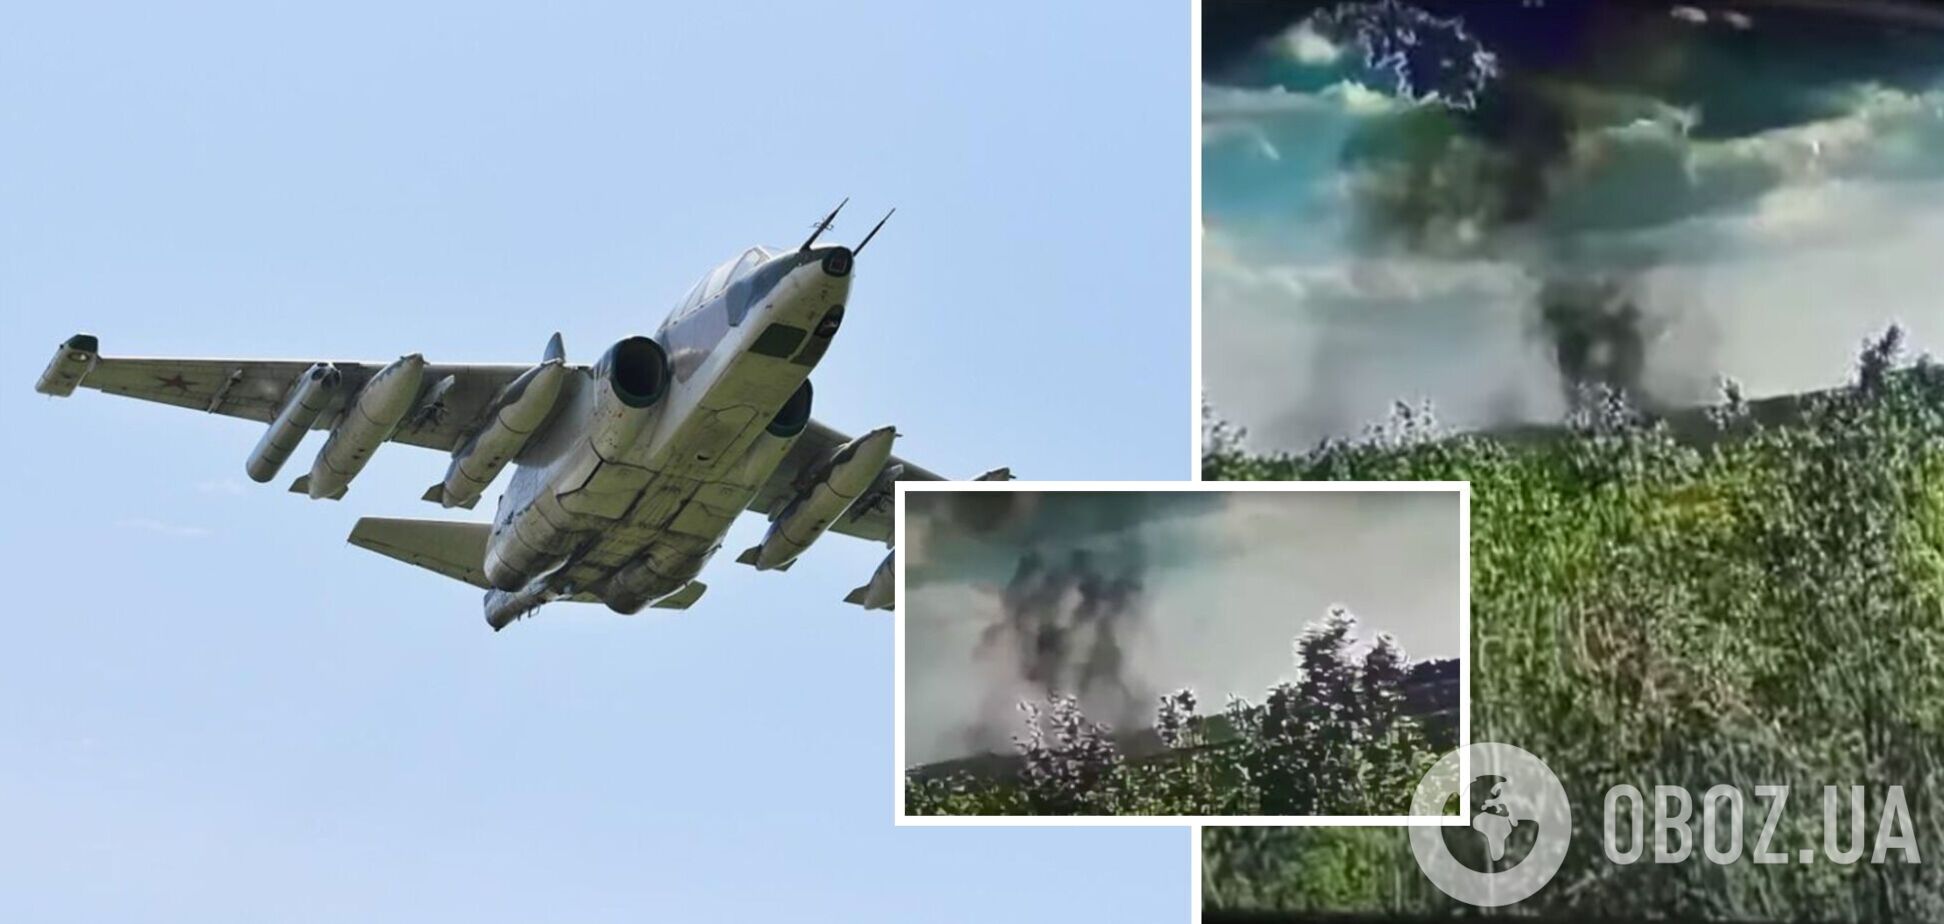 Бойцы 47-й бригады около Работино сбили российский самолет Су-25. Видео